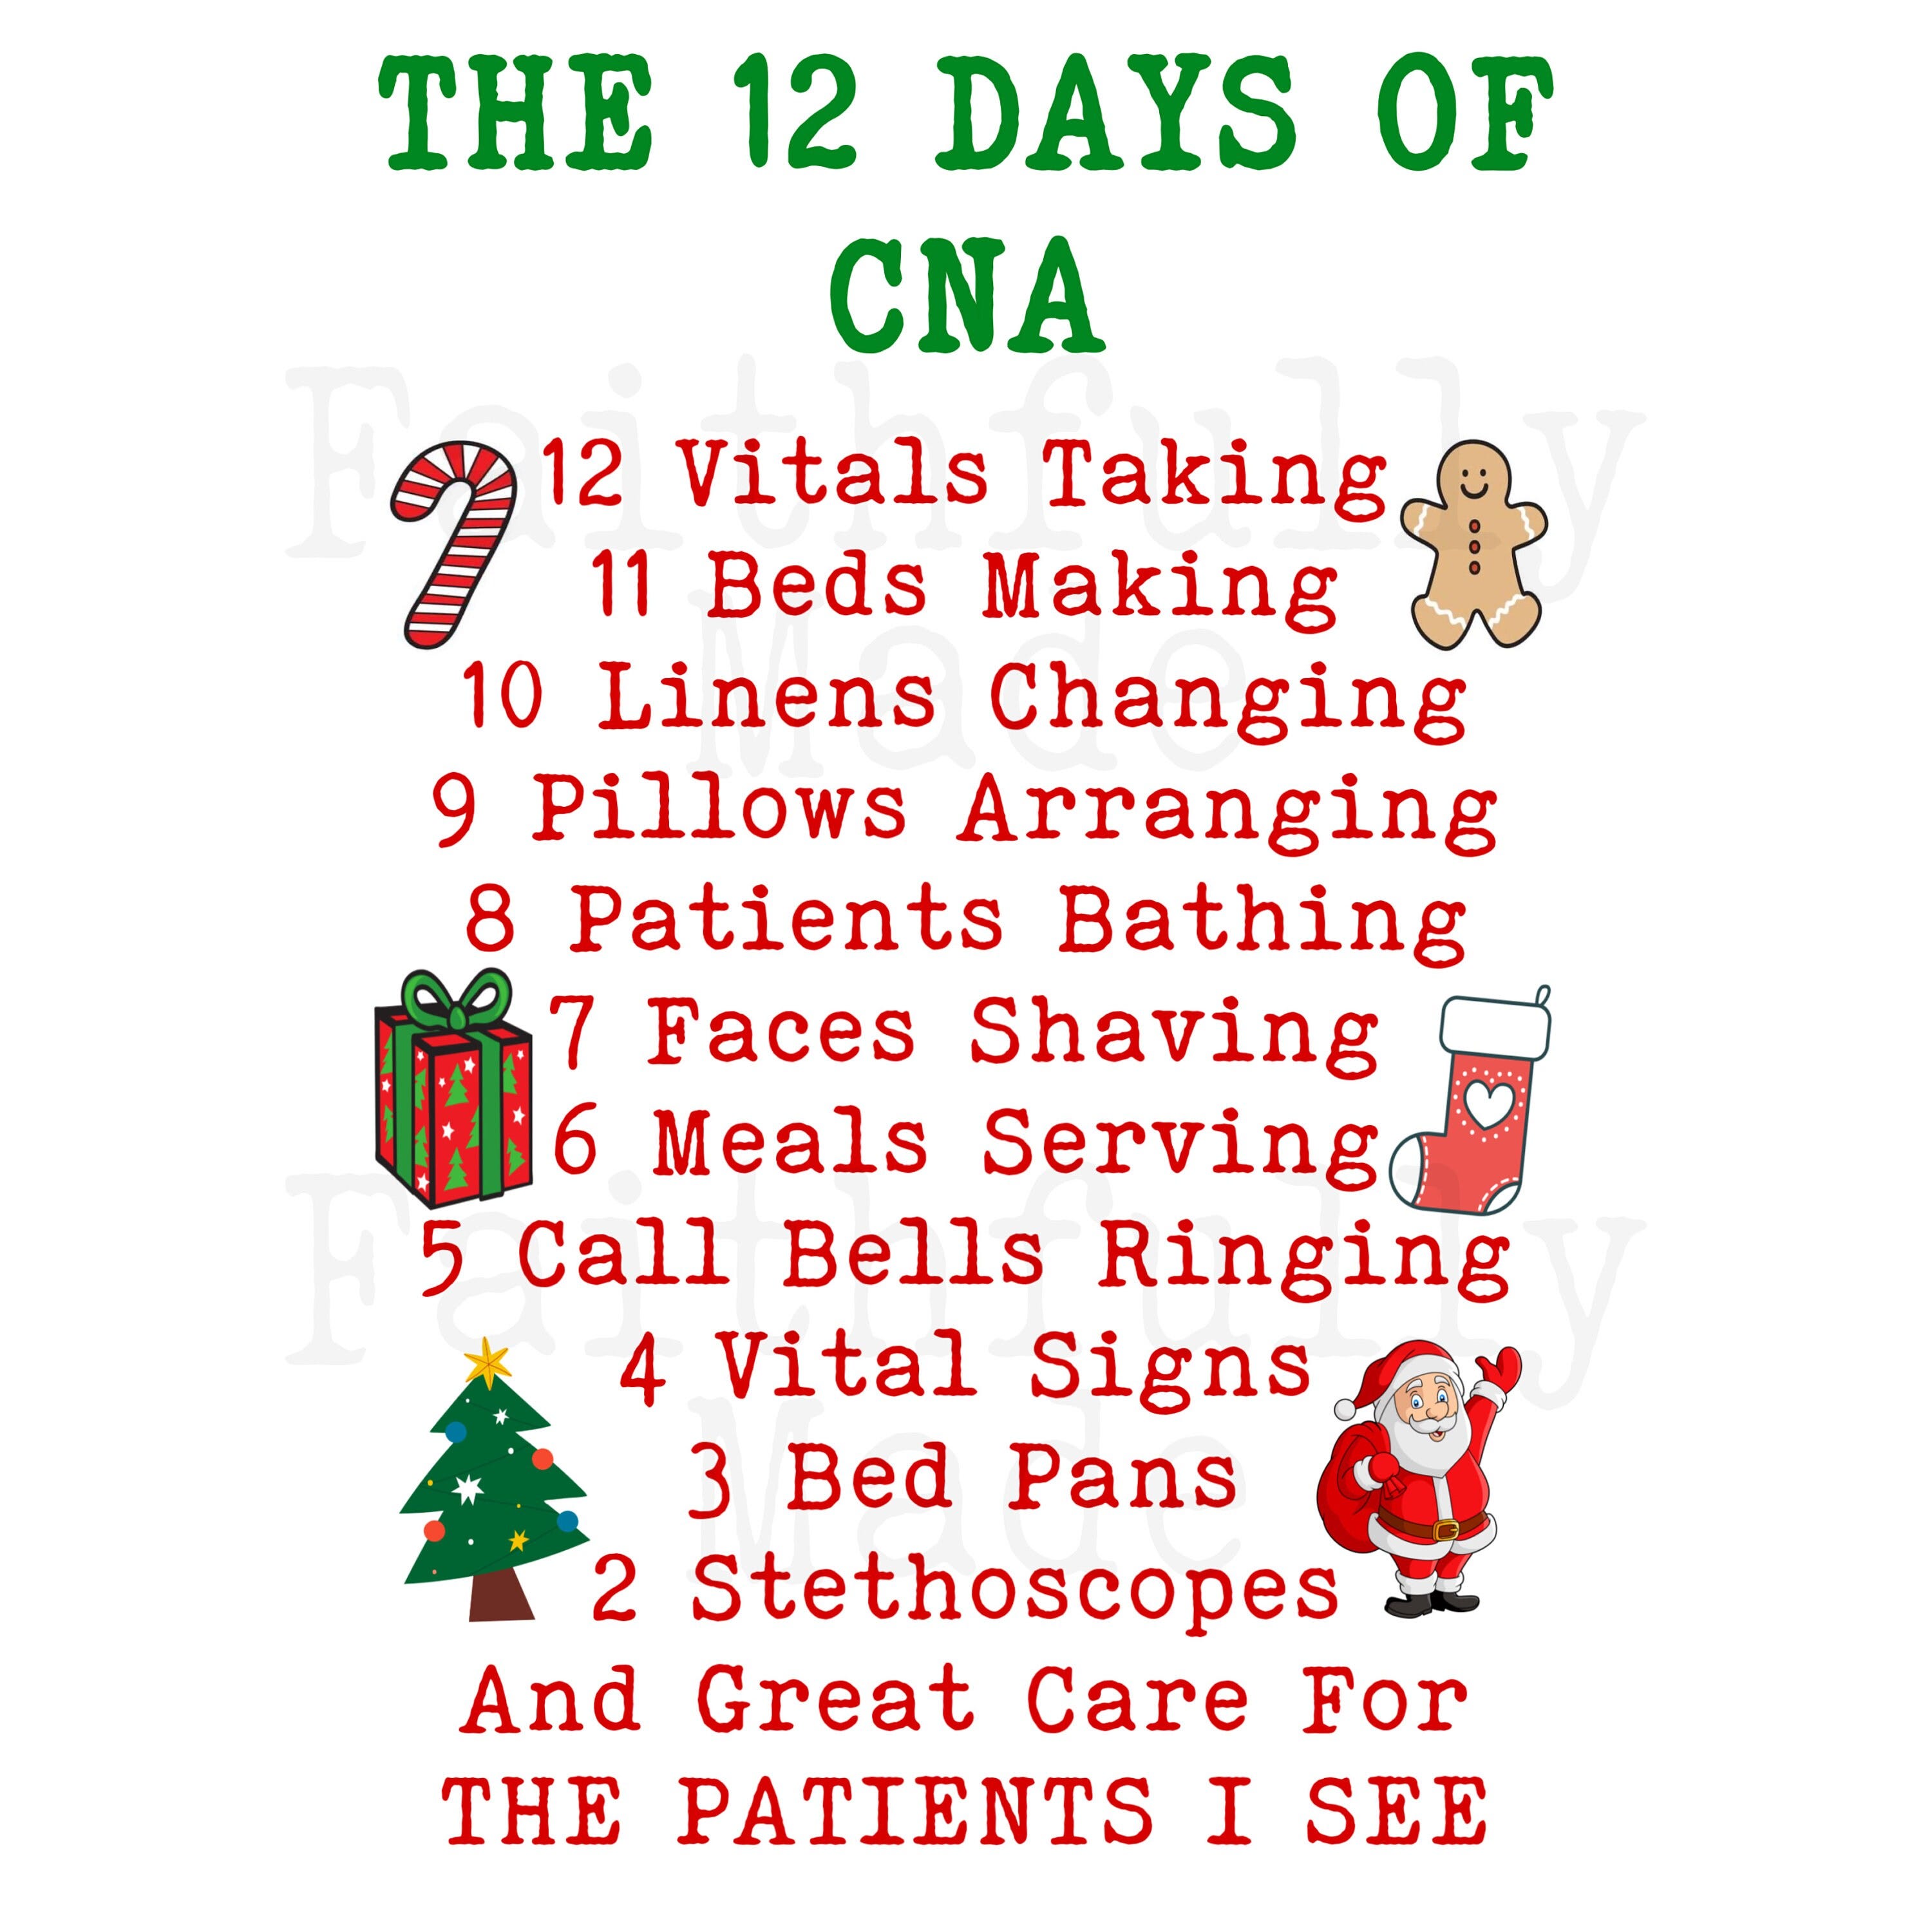 12 Days Of CNA